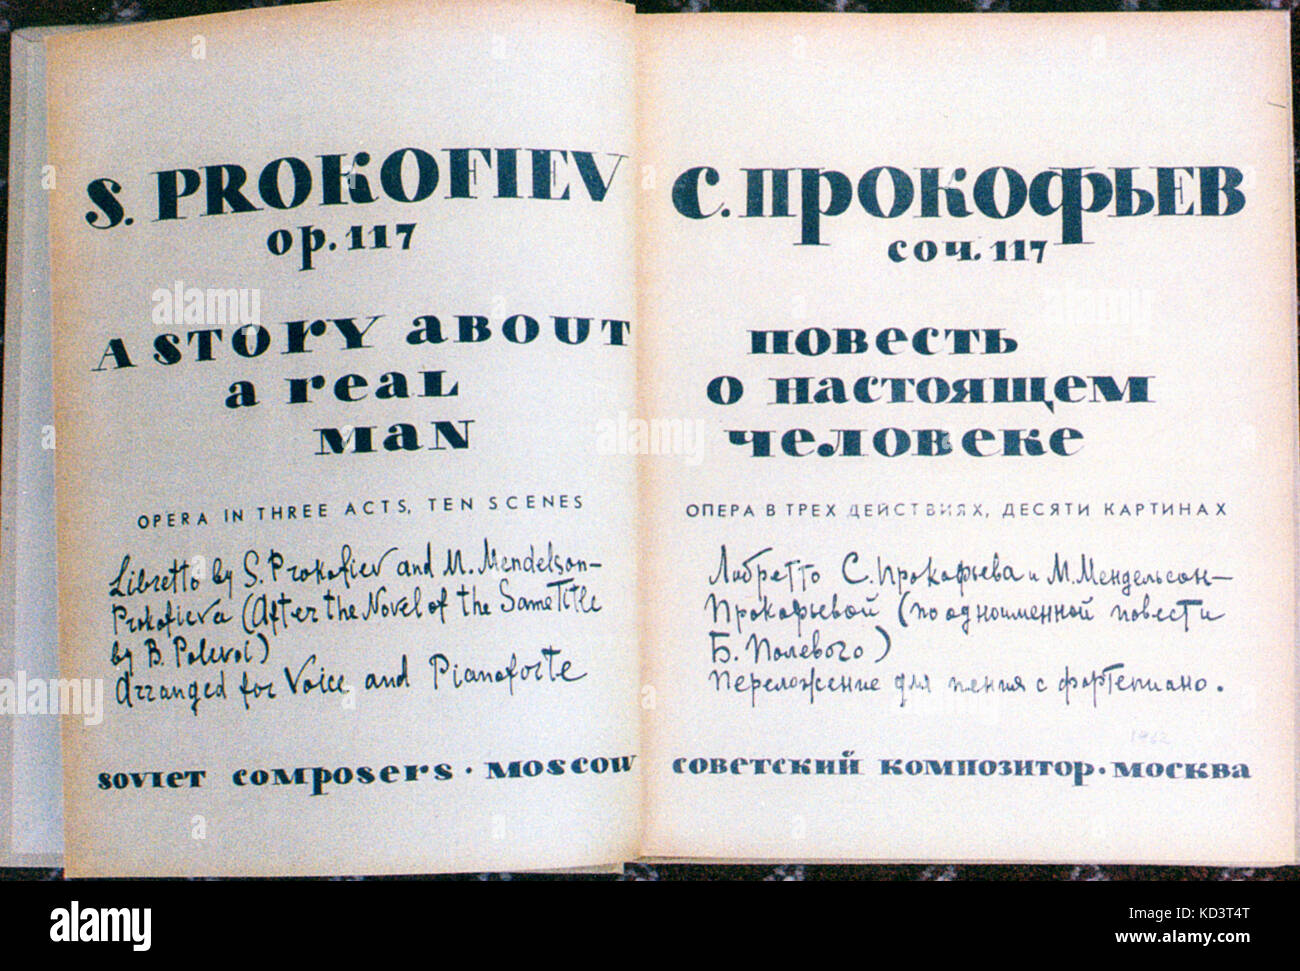 PROKOFIEV, S -una historia sobre un hombre verdadero,op117.Opera libreto de  S & M Mendelson-Prokofieva Prokofiev (después de una novela del mismo  título de B.Polivol) Compositores soviéticos de Moscú, 1962, 1ª edición. 1er